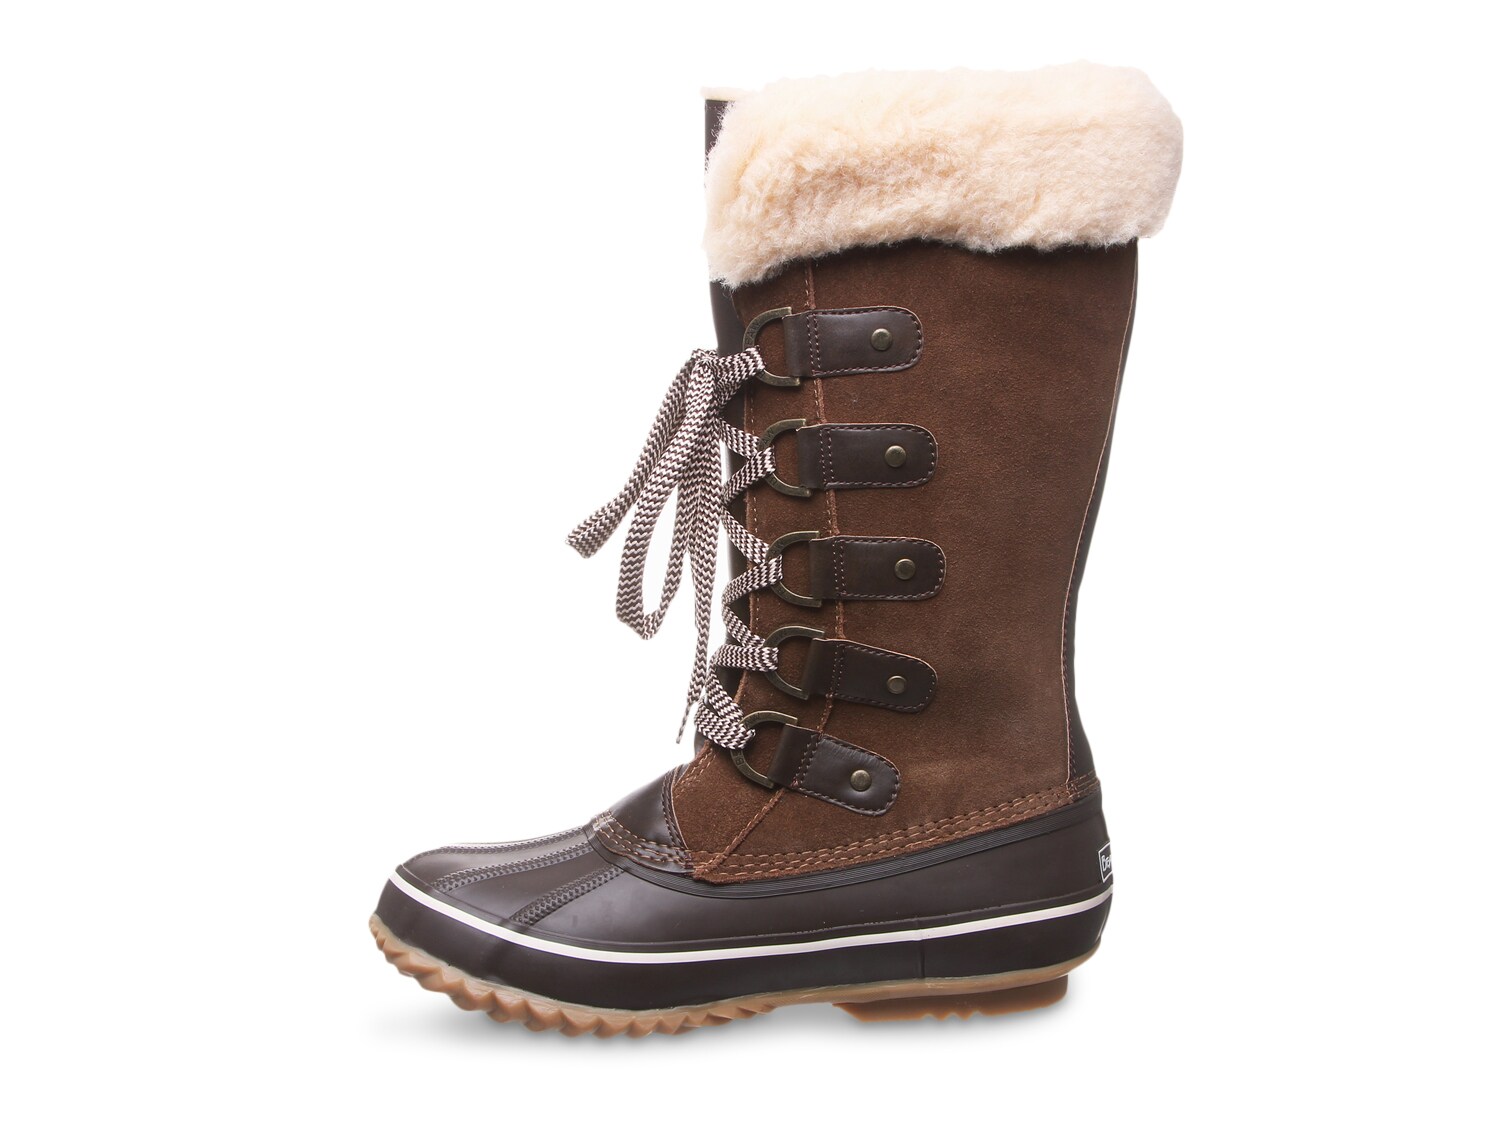 Bearpaw Denali Snow Boot Women's Shoes | DSW